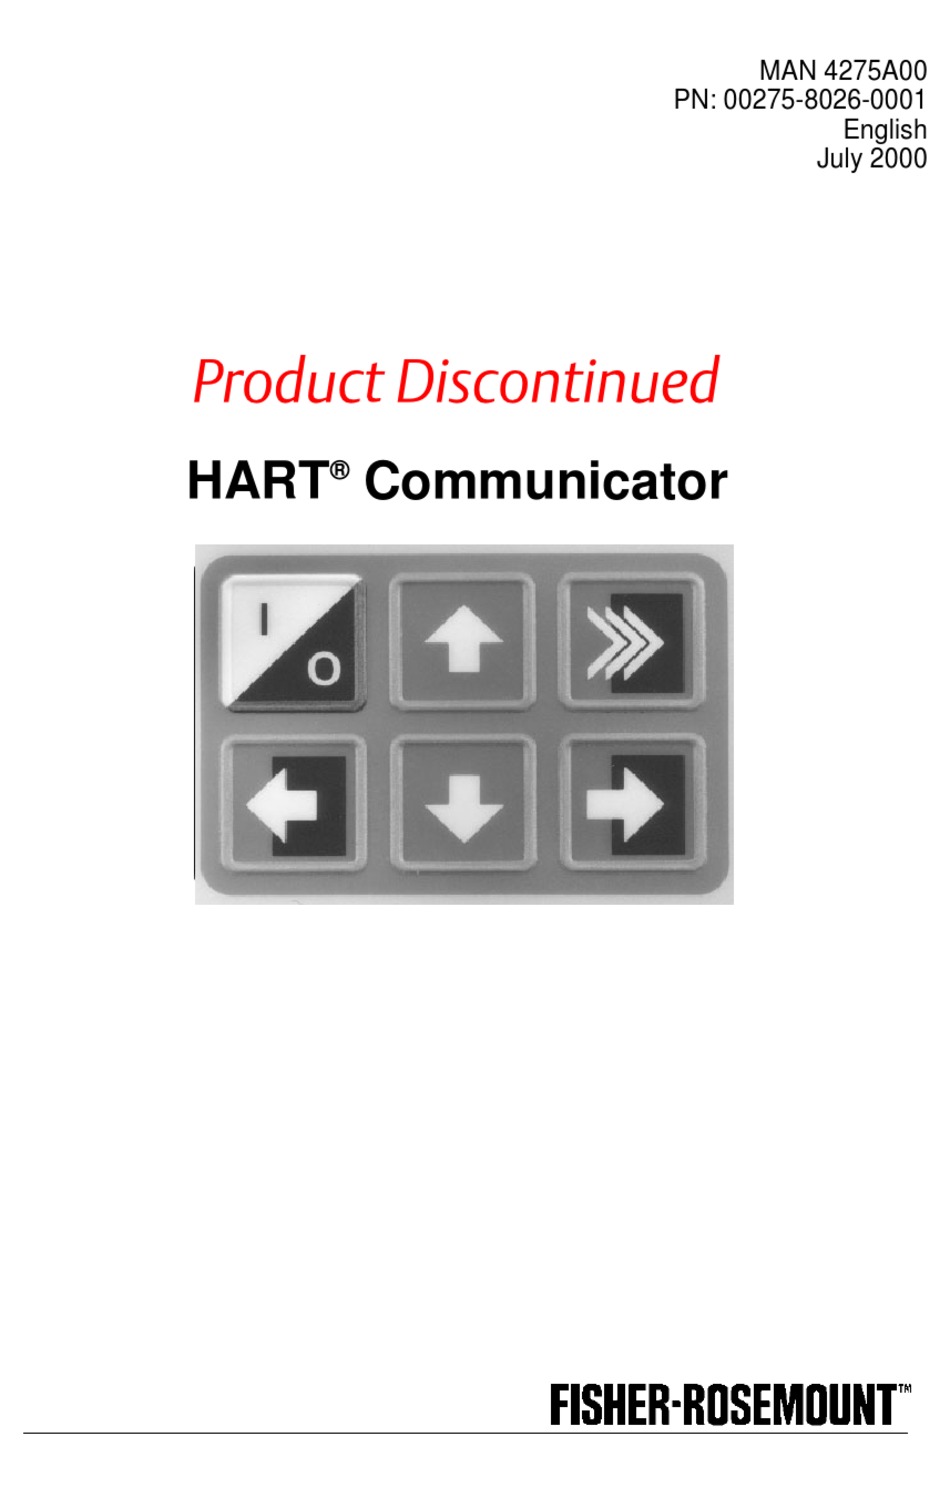 hart tri-loop configuration software